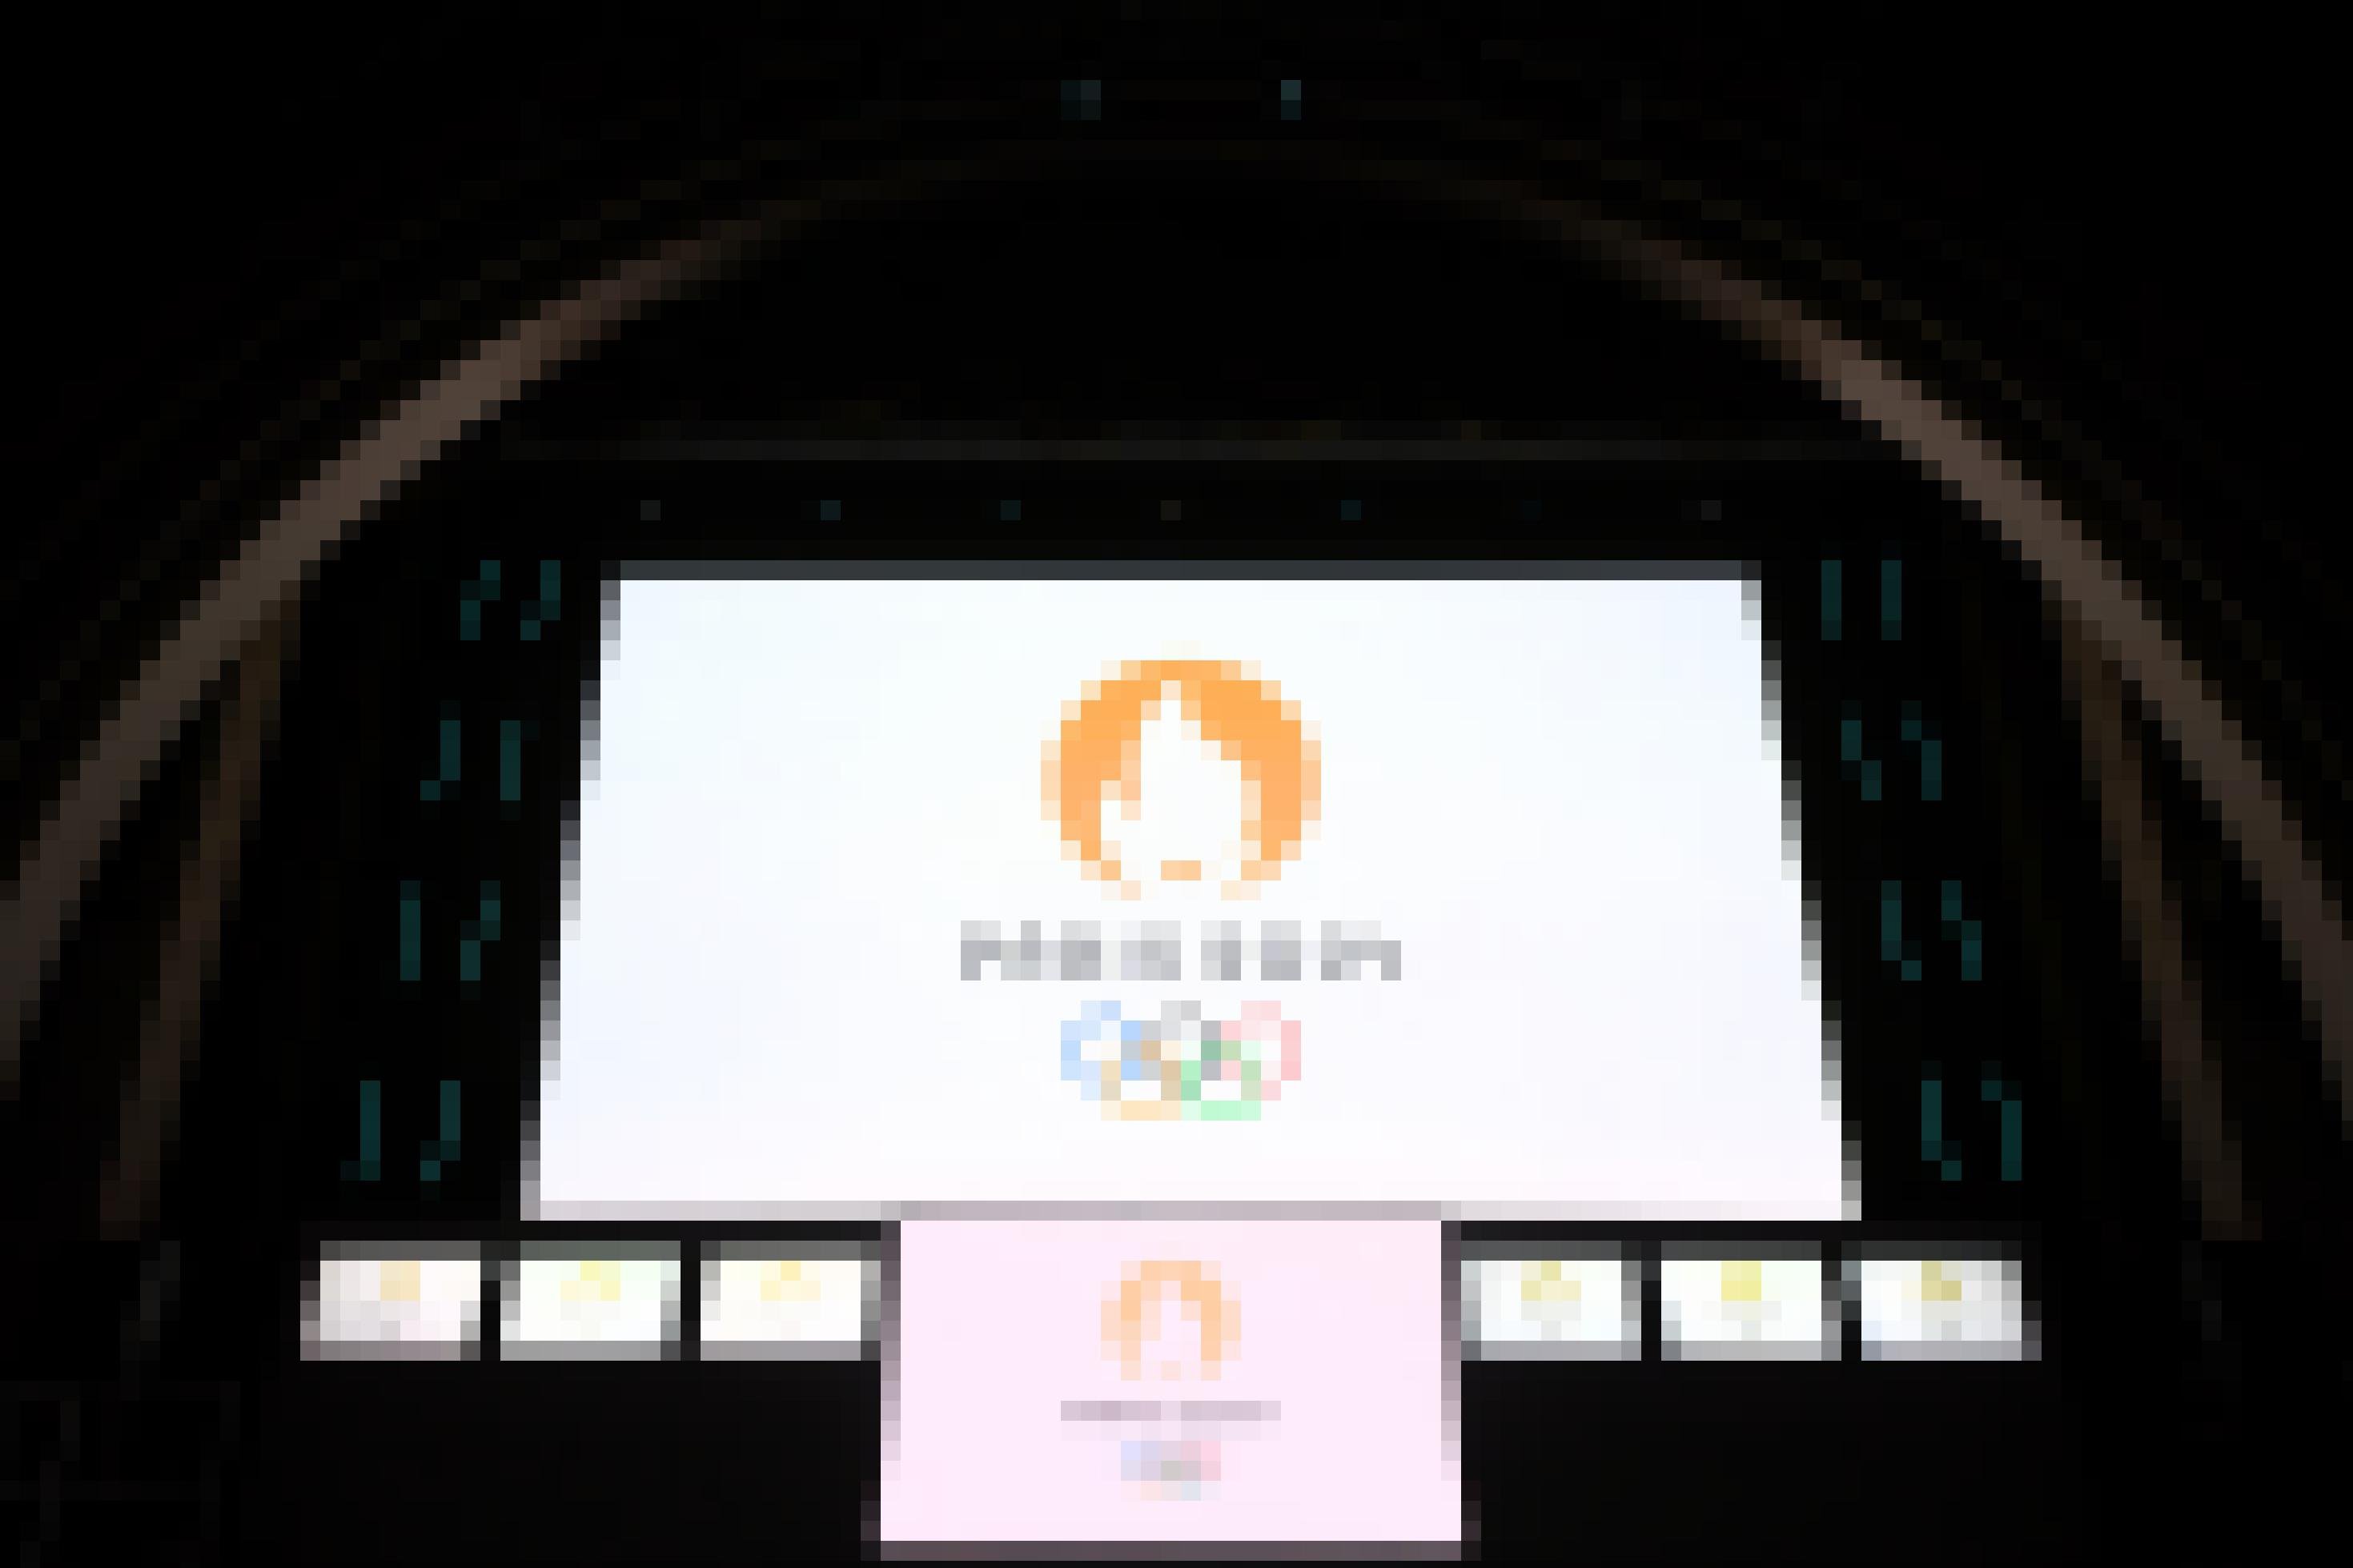 Das offizielle Logo der Olympischen Spiele, eine Flamme mit Mund, auf deinem Bildschirm.